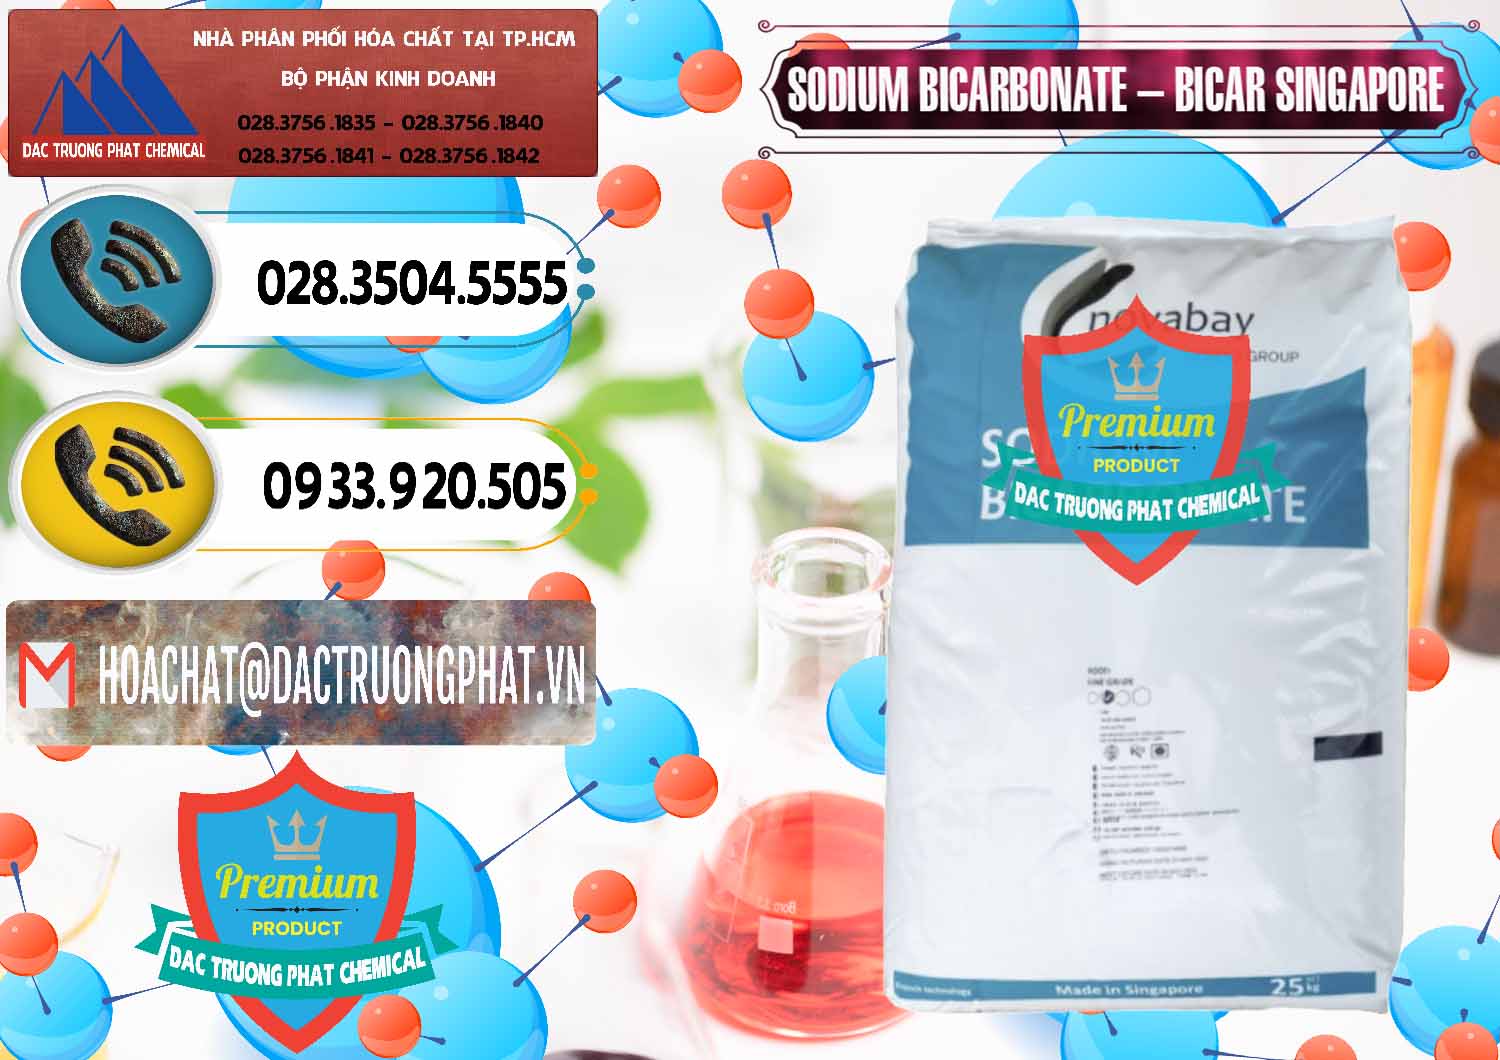 Đơn vị chuyên cung ứng & bán Sodium Bicarbonate – Bicar NaHCO3 Singapore - 0411 - Đơn vị cung cấp và phân phối hóa chất tại TP.HCM - hoachatdetnhuom.vn